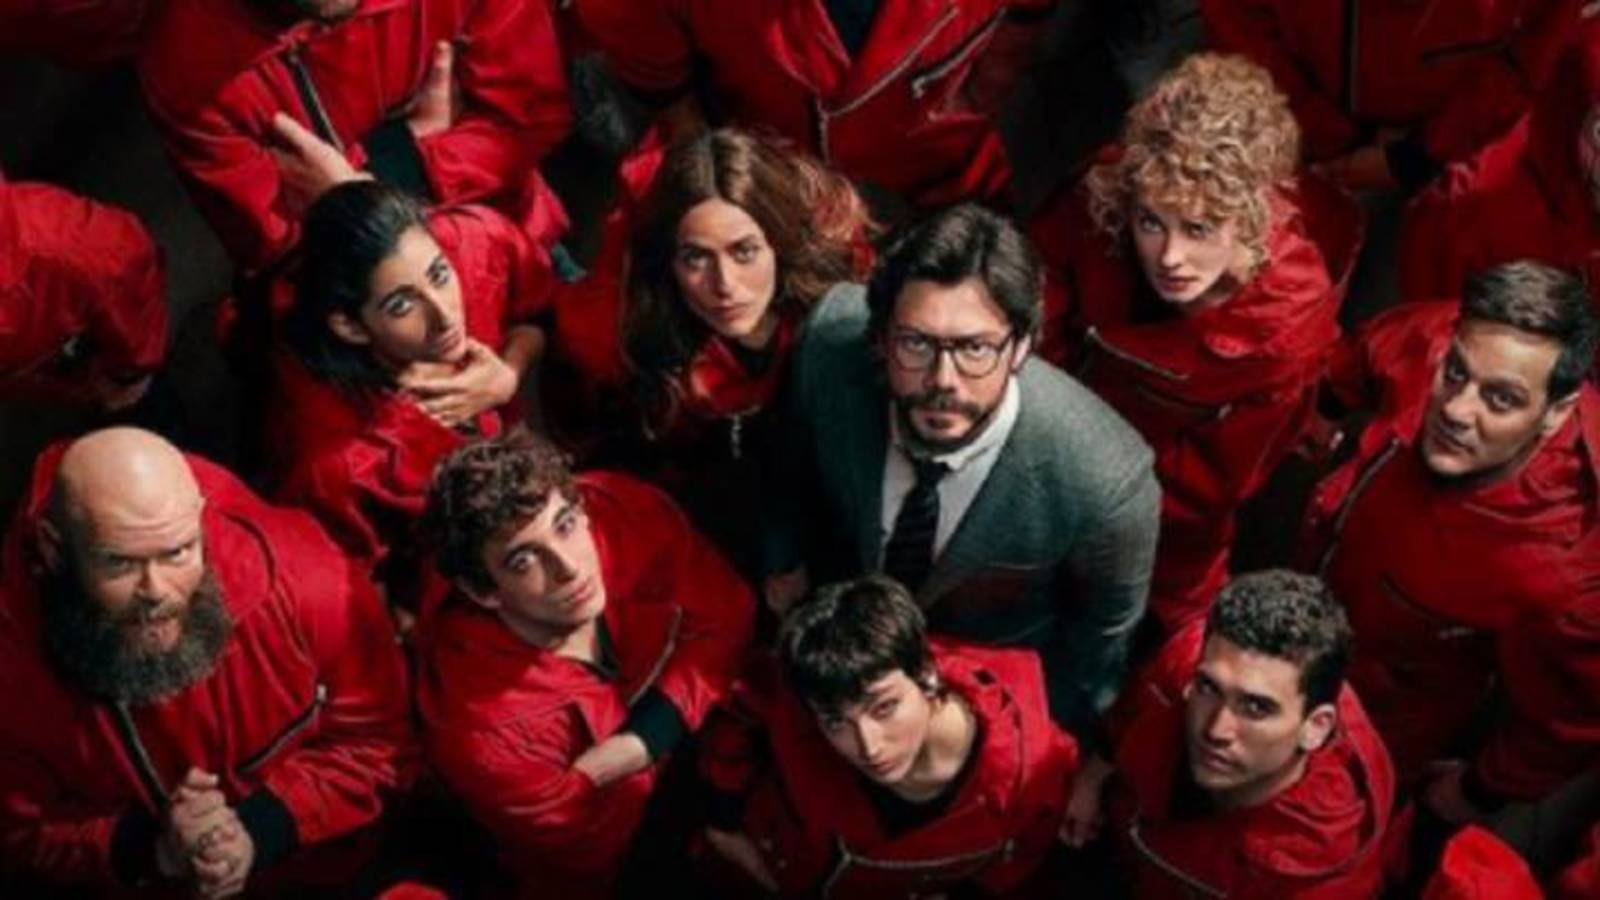 Las series y las películas españolas triunfan en Netflix en 2020